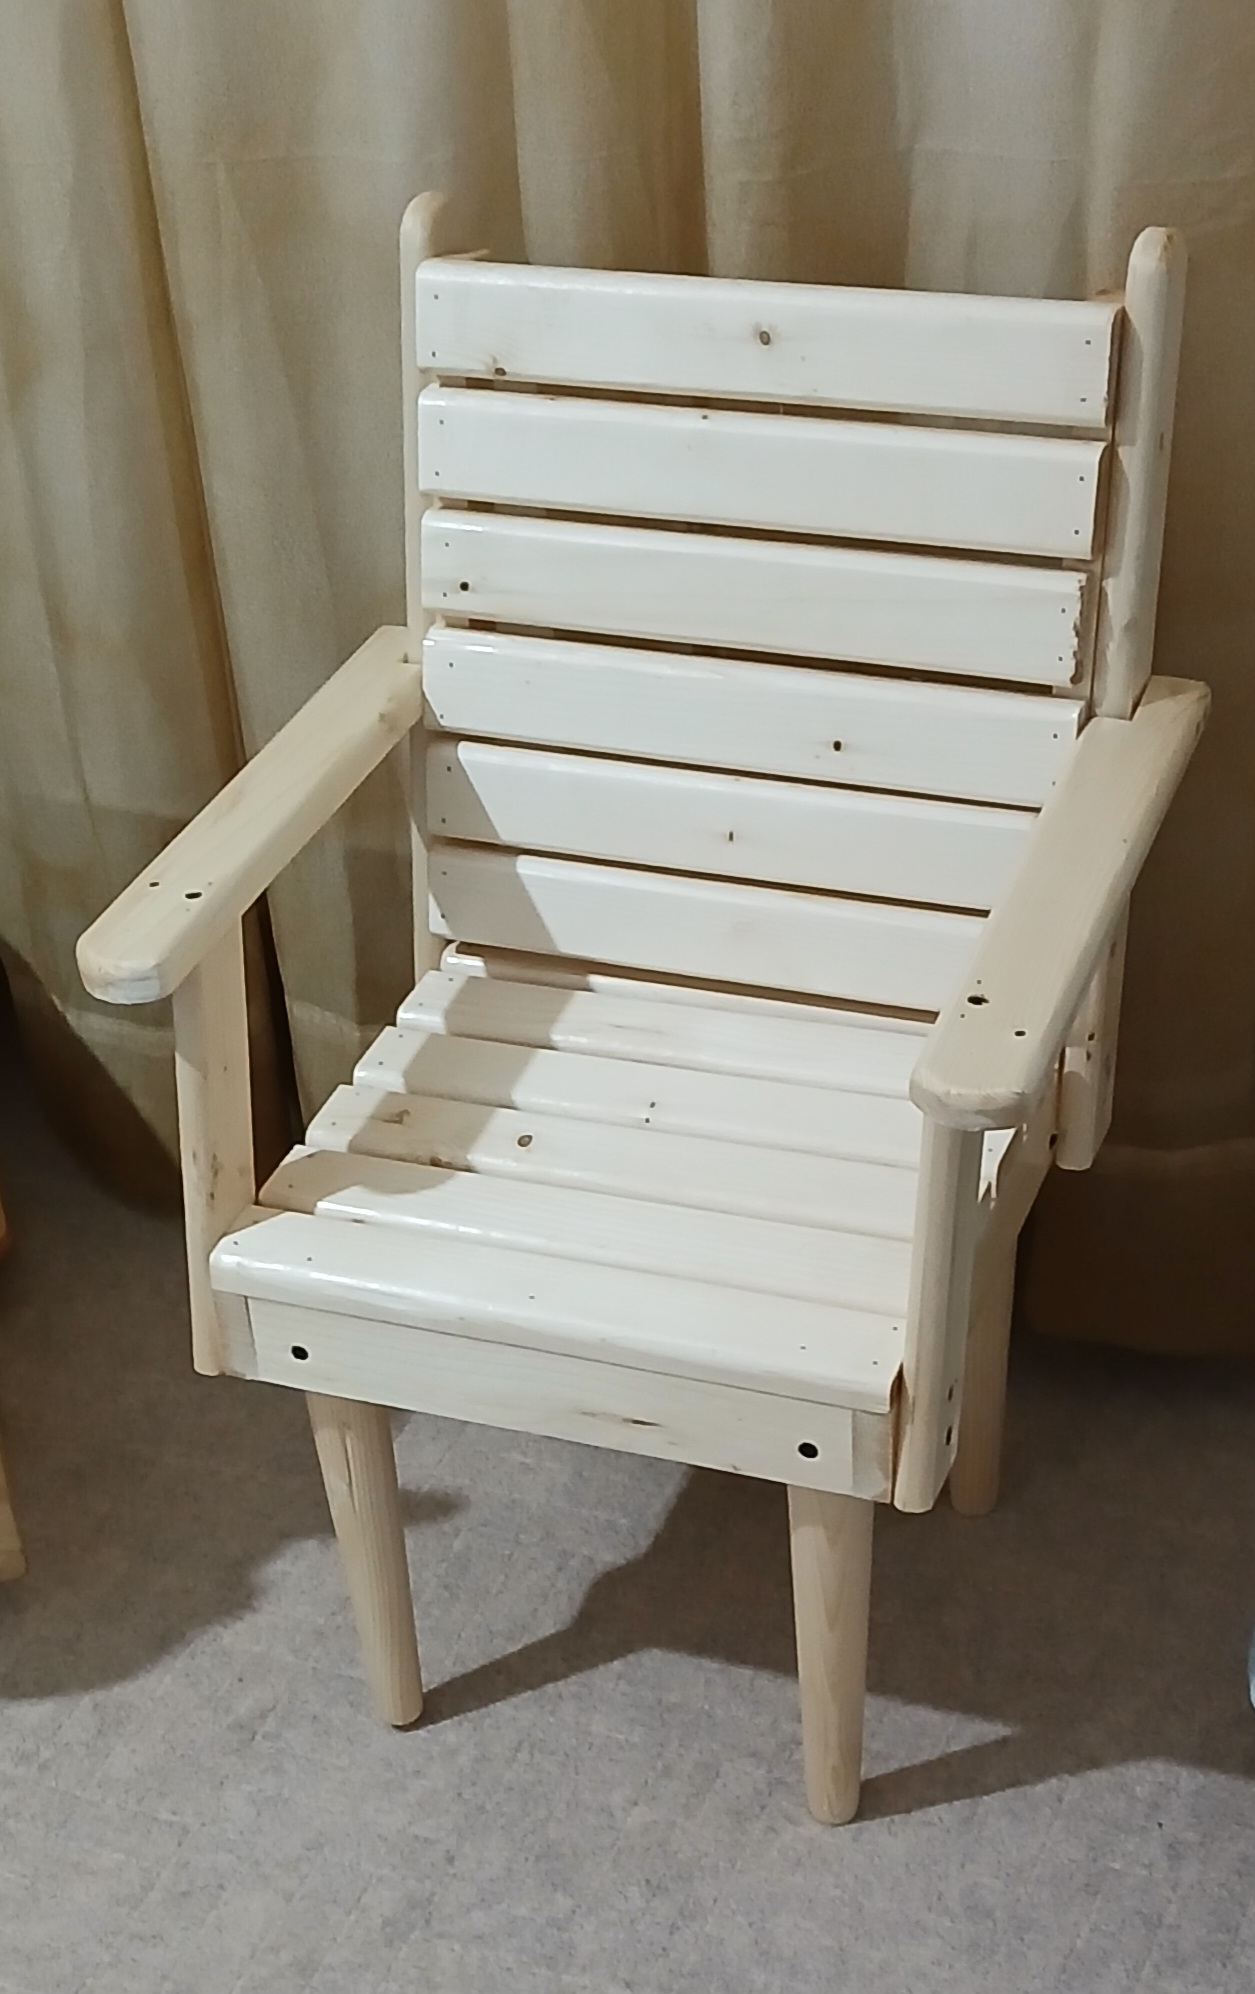 صندلی کودک مدل دسته دارچوبی باچوب روسی(خرید مستقیم از تولیدکننده)